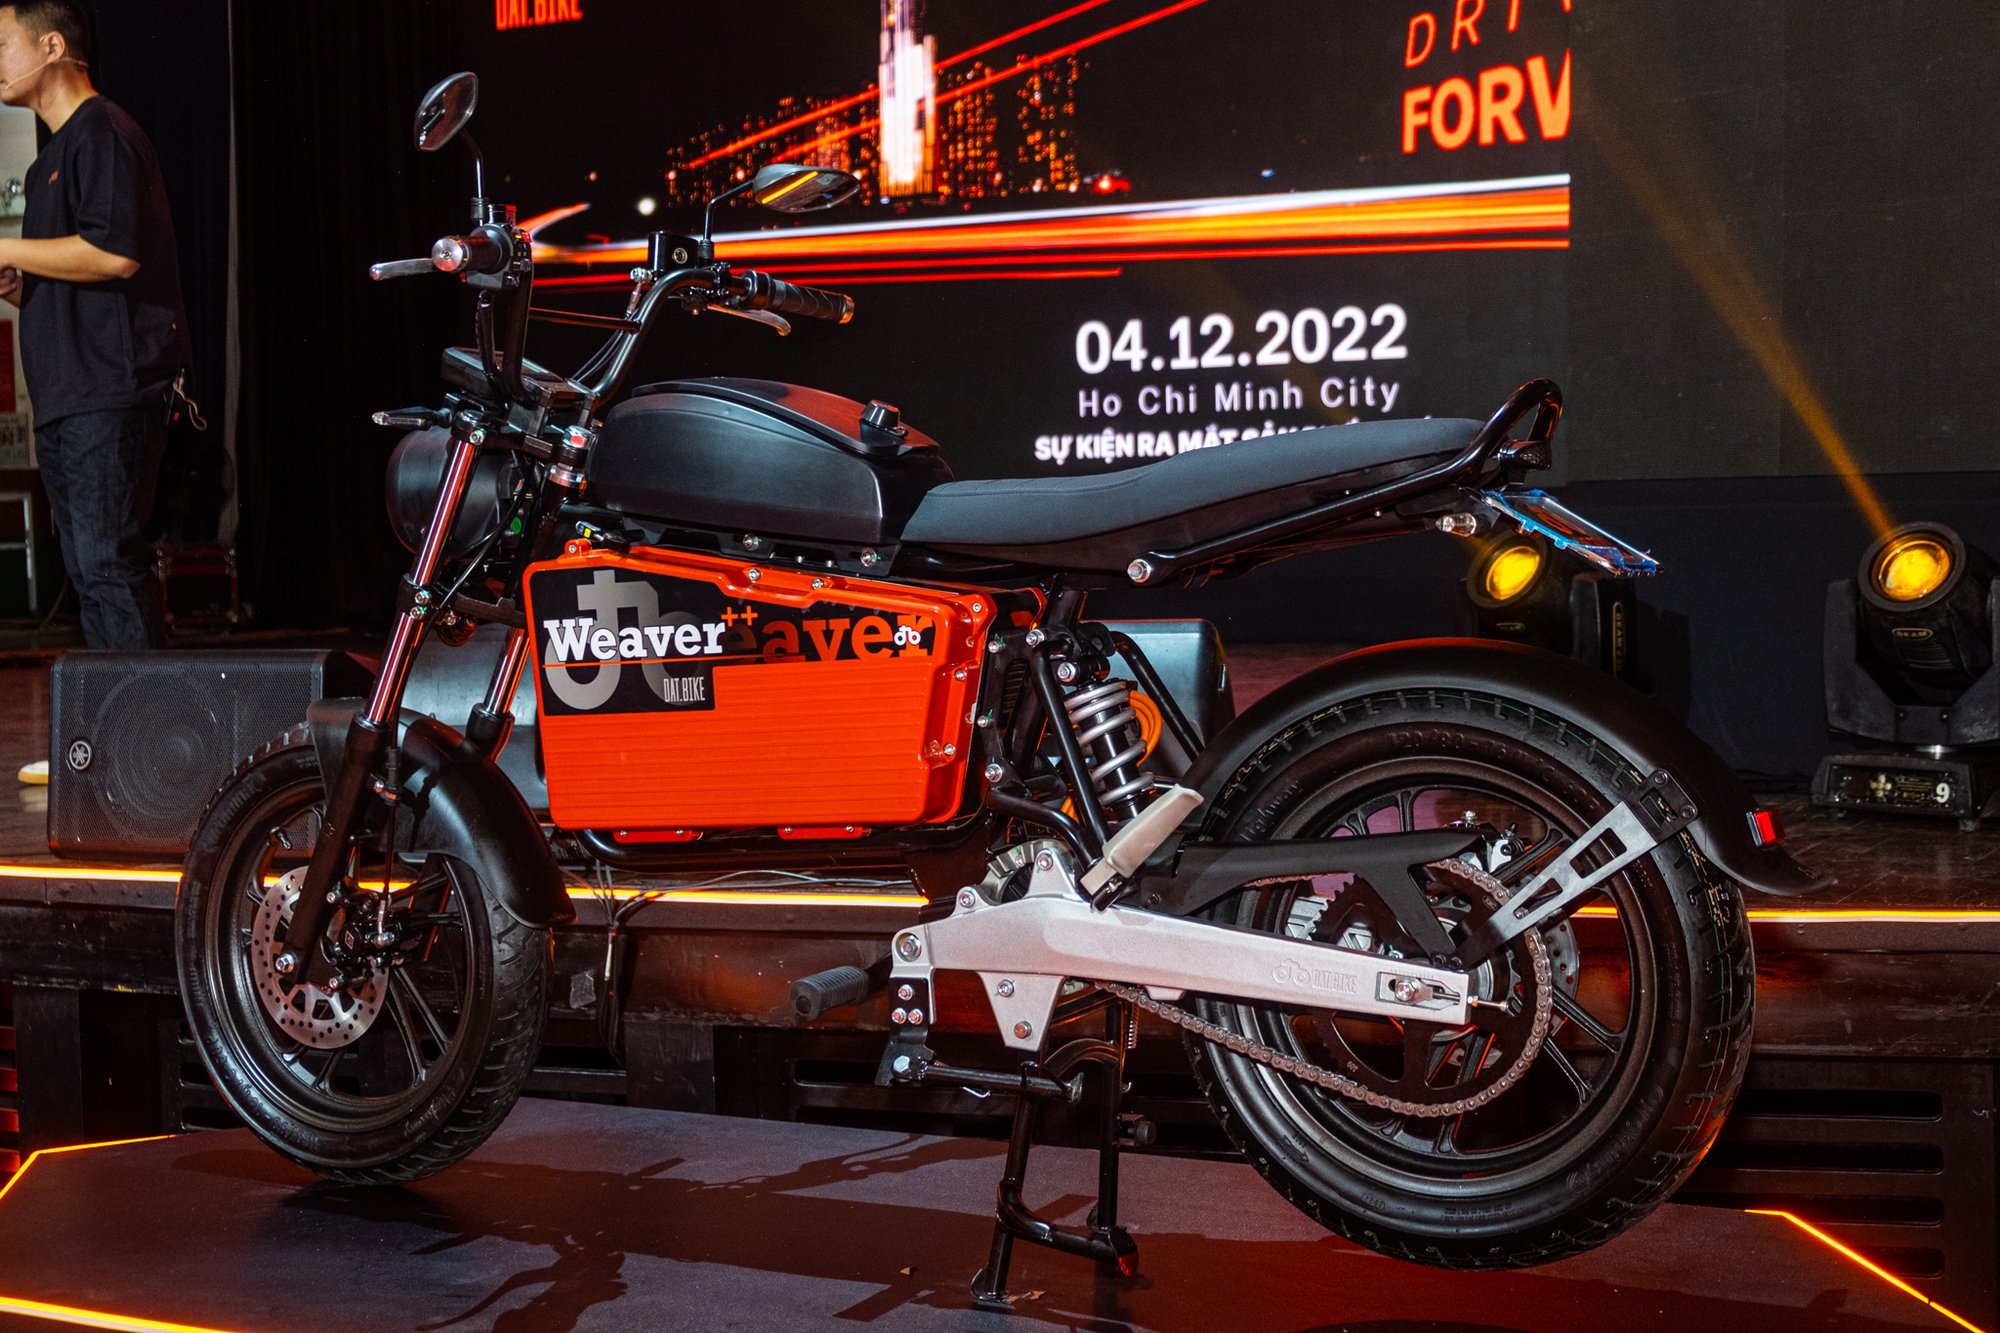 Ra mắt Dat Bike Weaver++: Giá 65,9 triệu đồng, dáng cổ điển, sạc nhanh chưa từng có tại Việt Nam - Ảnh 9.